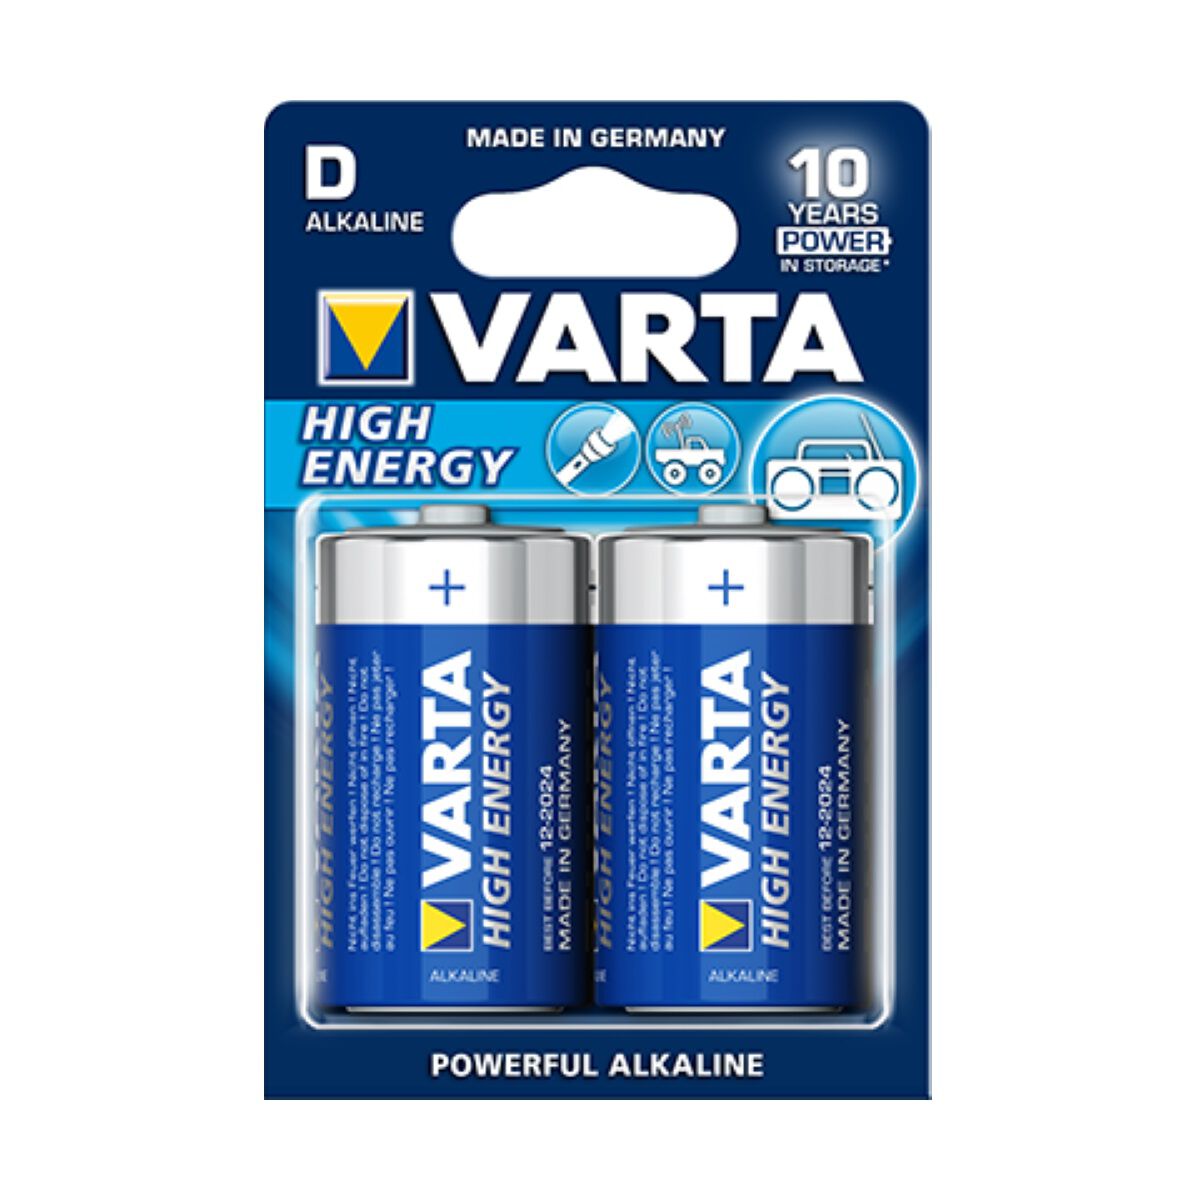 Varta High Energy Battery - D, 2 Pack | Supercheap Auto